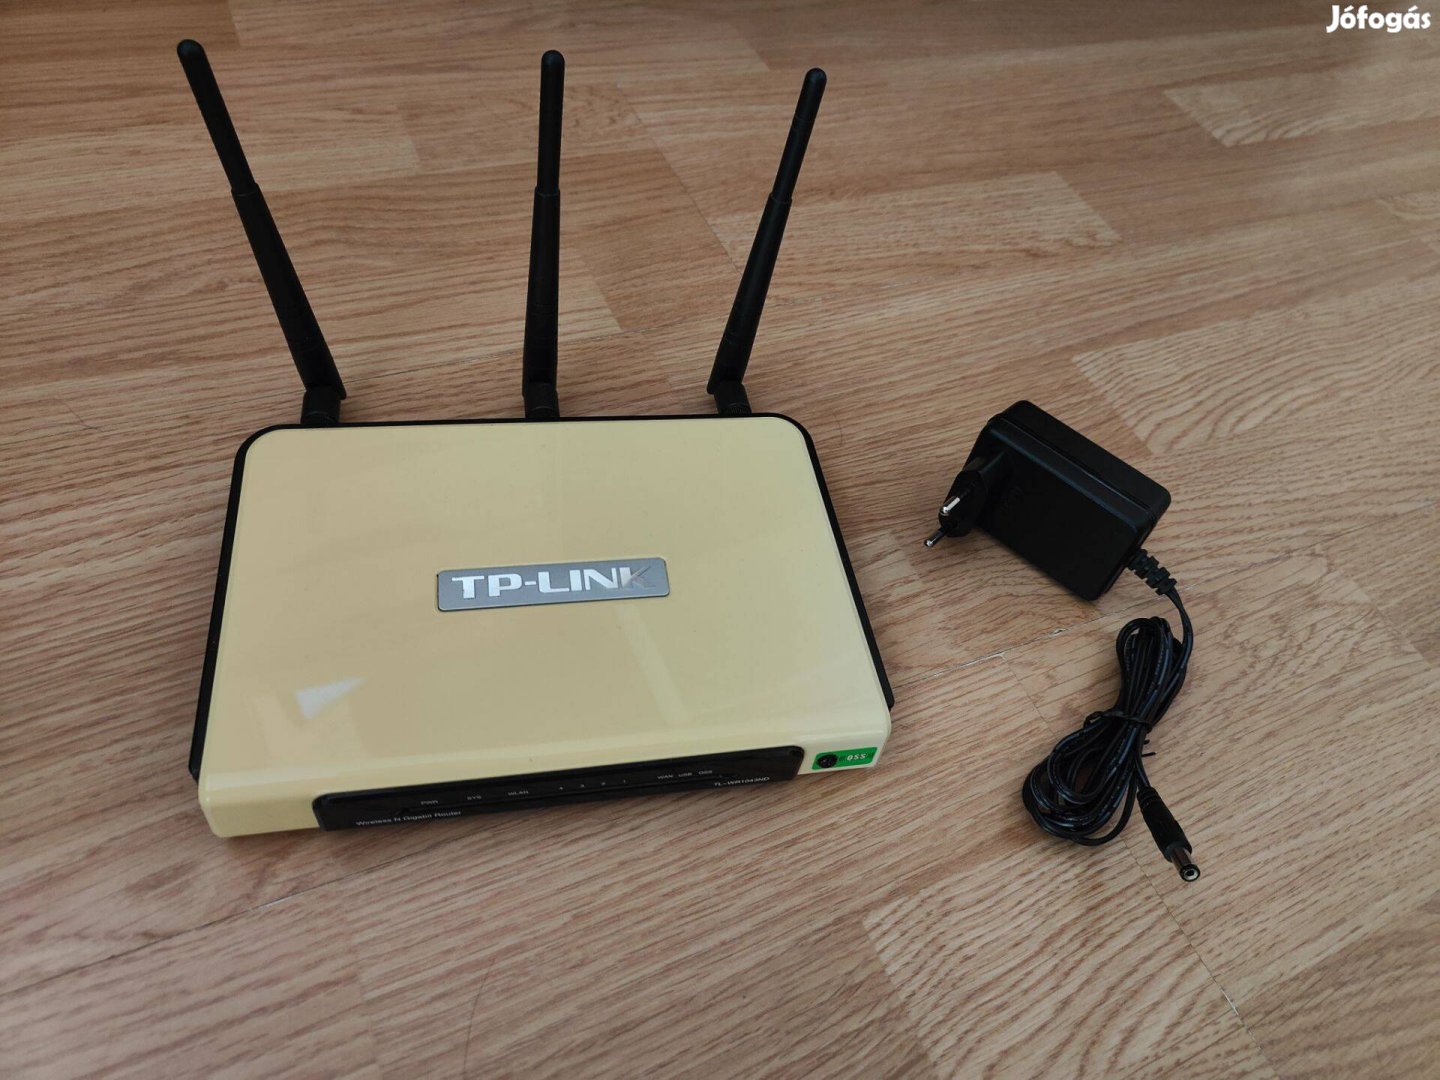 TP-Link 1043ND v1.8 router